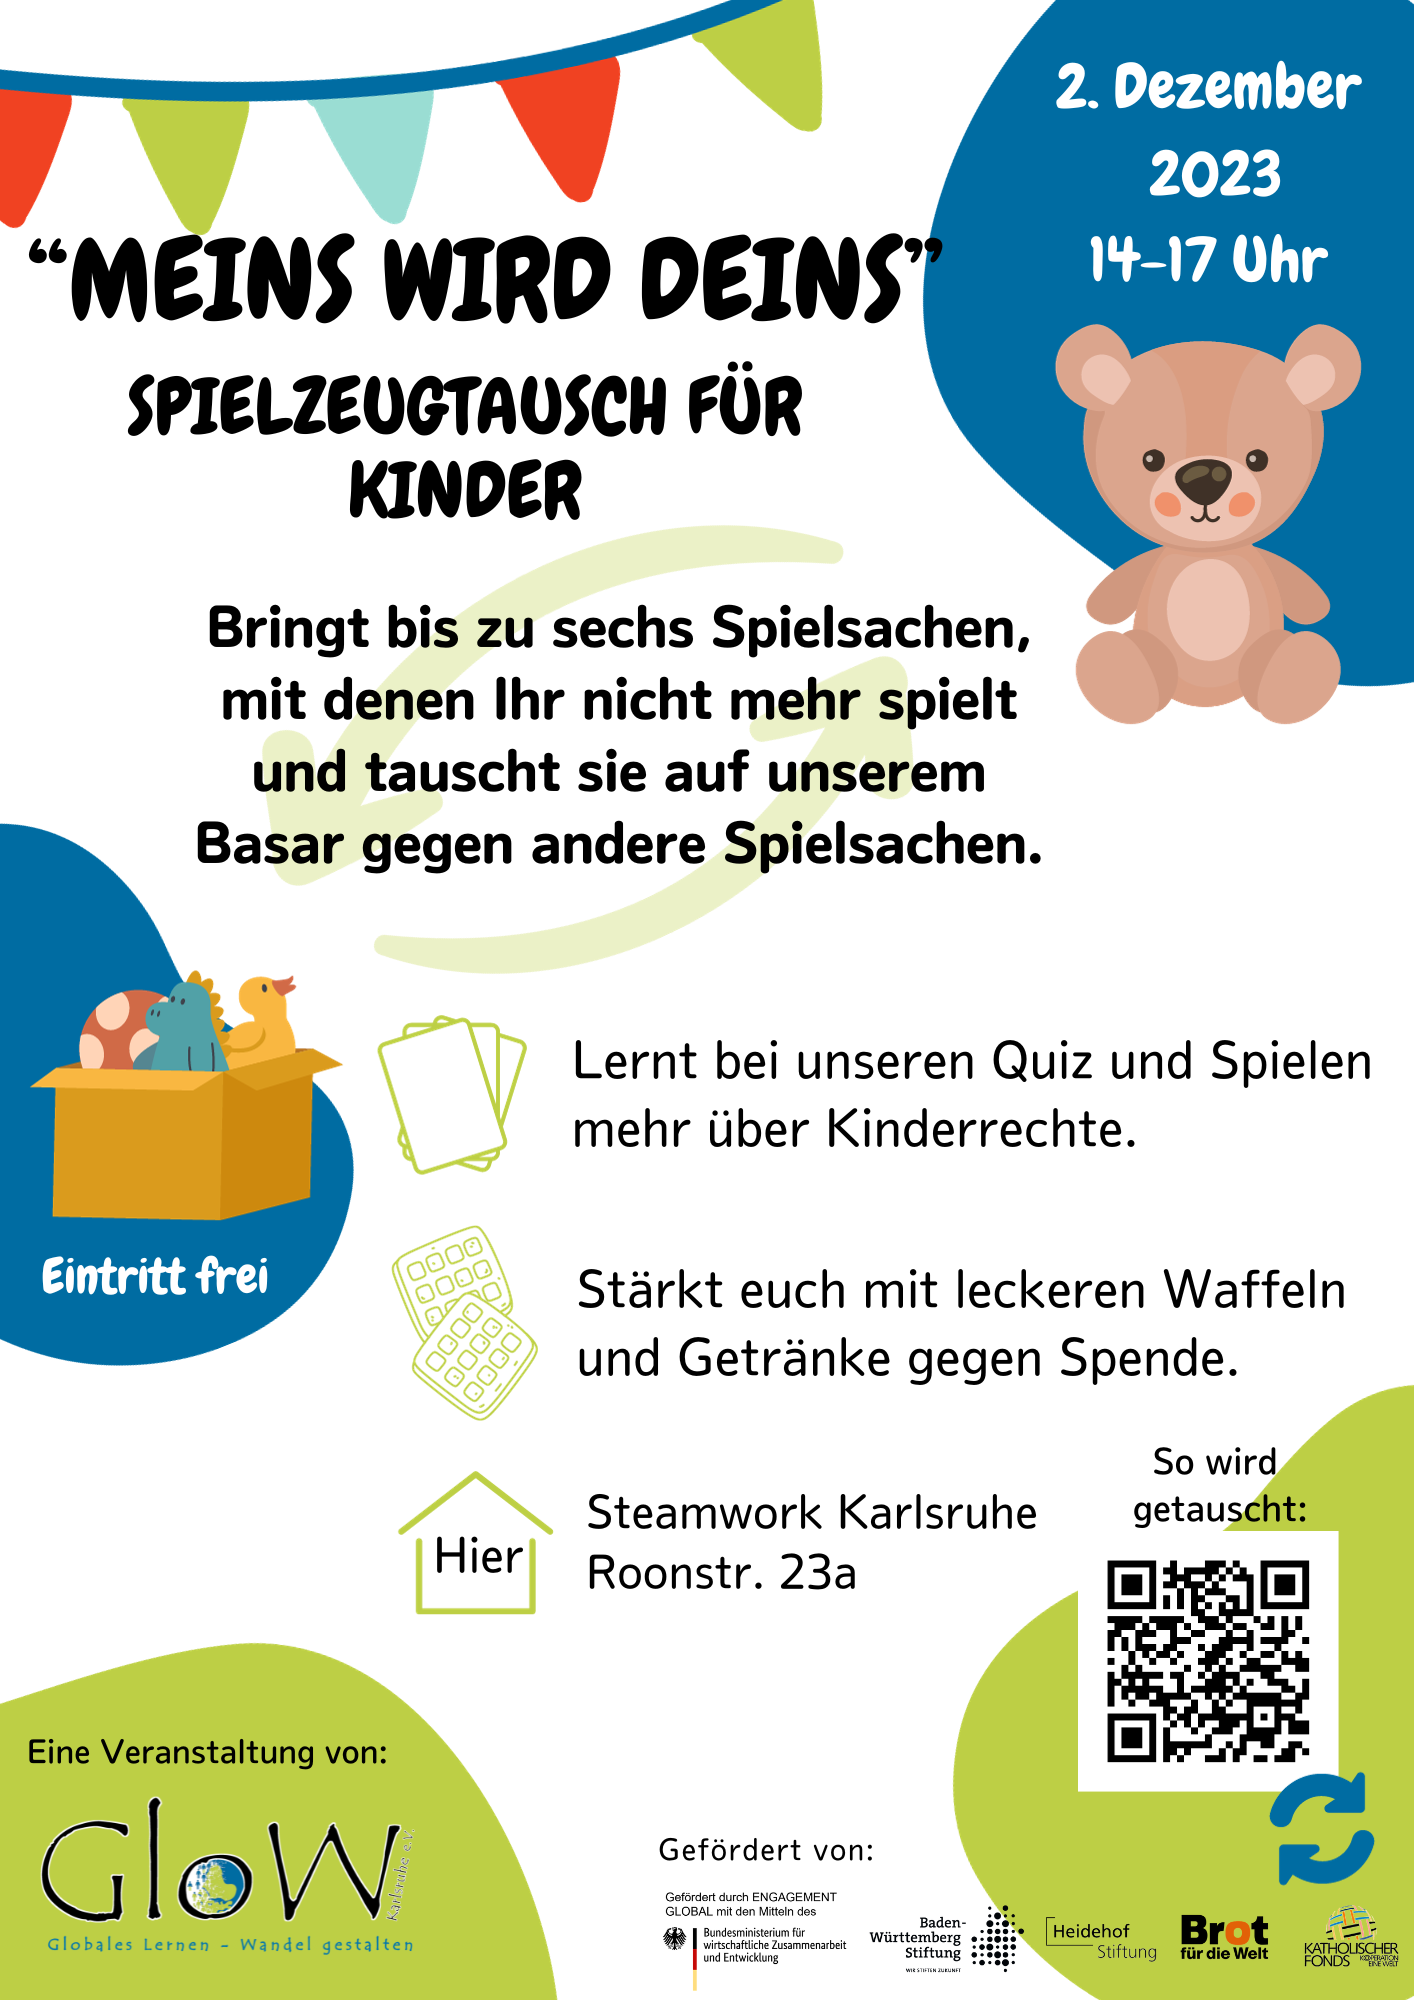 Meins wird deins – Karlsruher Spielzeugtausch für Kinder